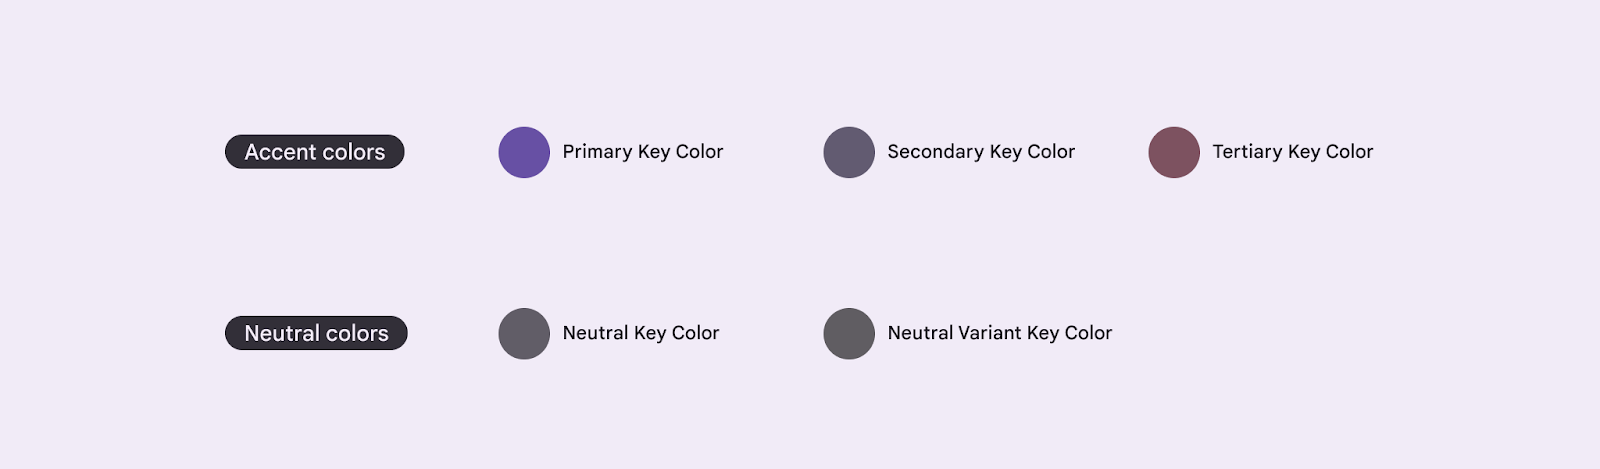 Cinque colori fondamentali di base per la creazione di una tematizzazione M3.